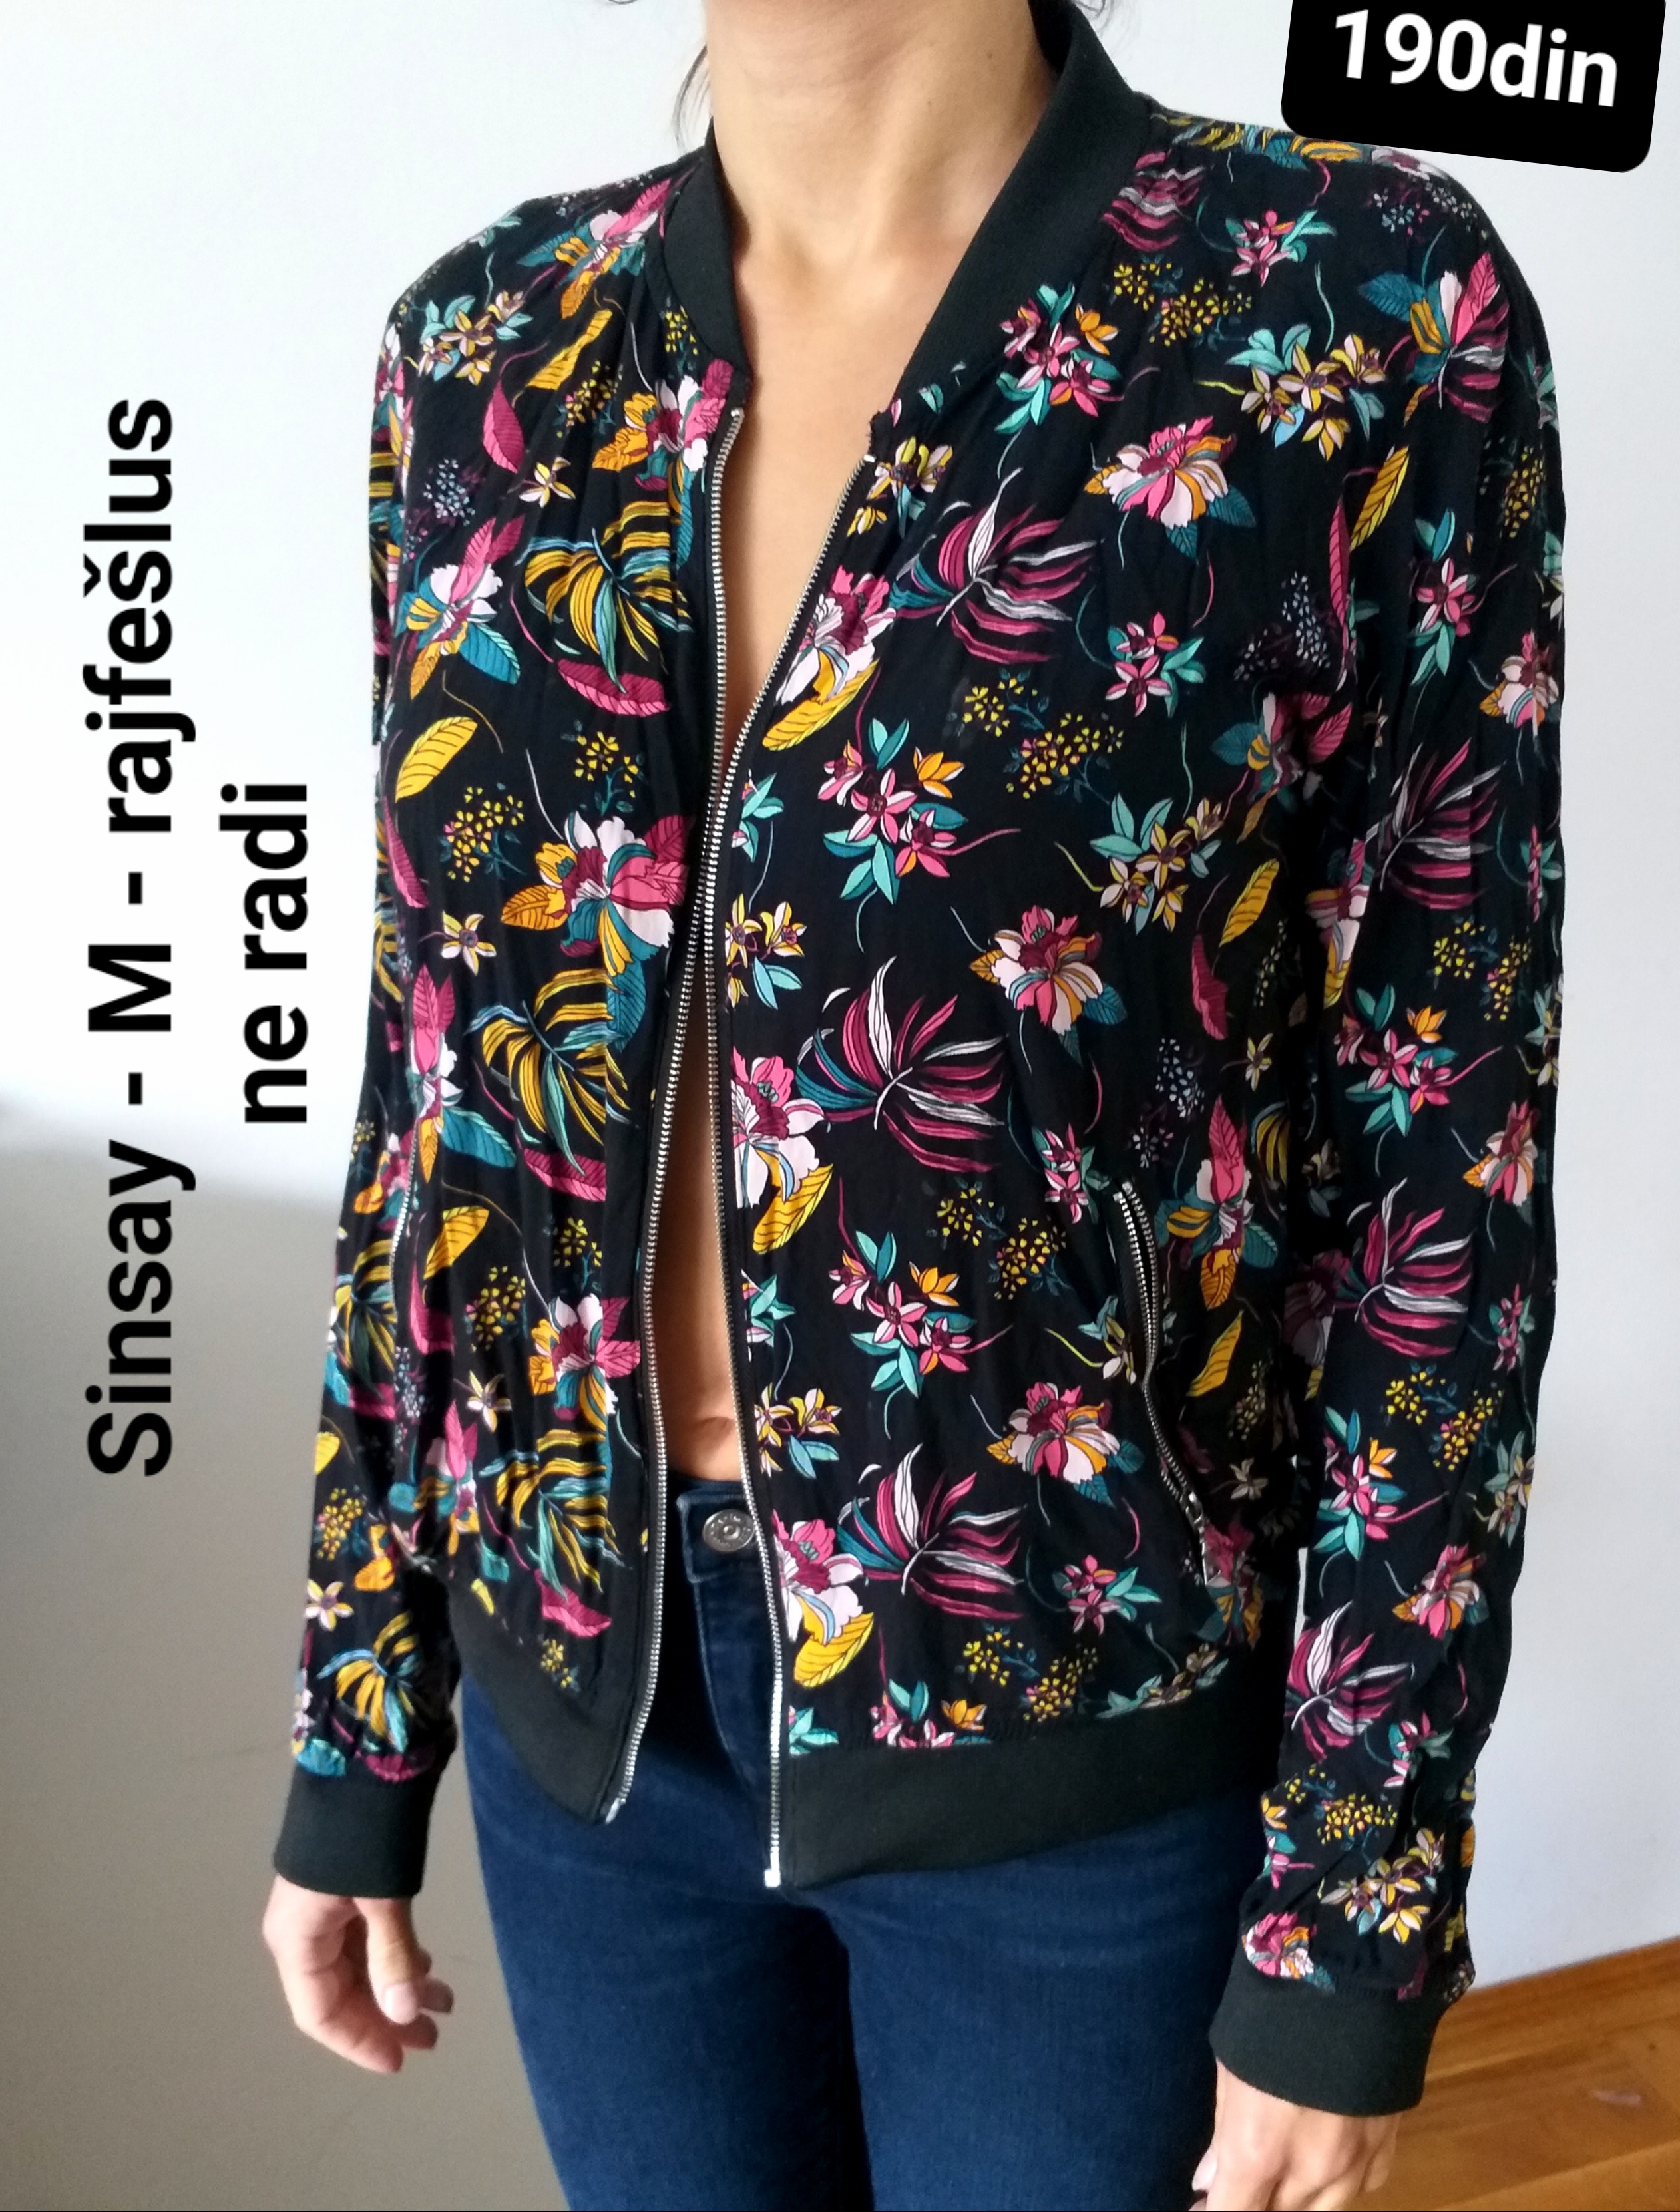 Sinsay crna trenerka jaknica cvetna M/38